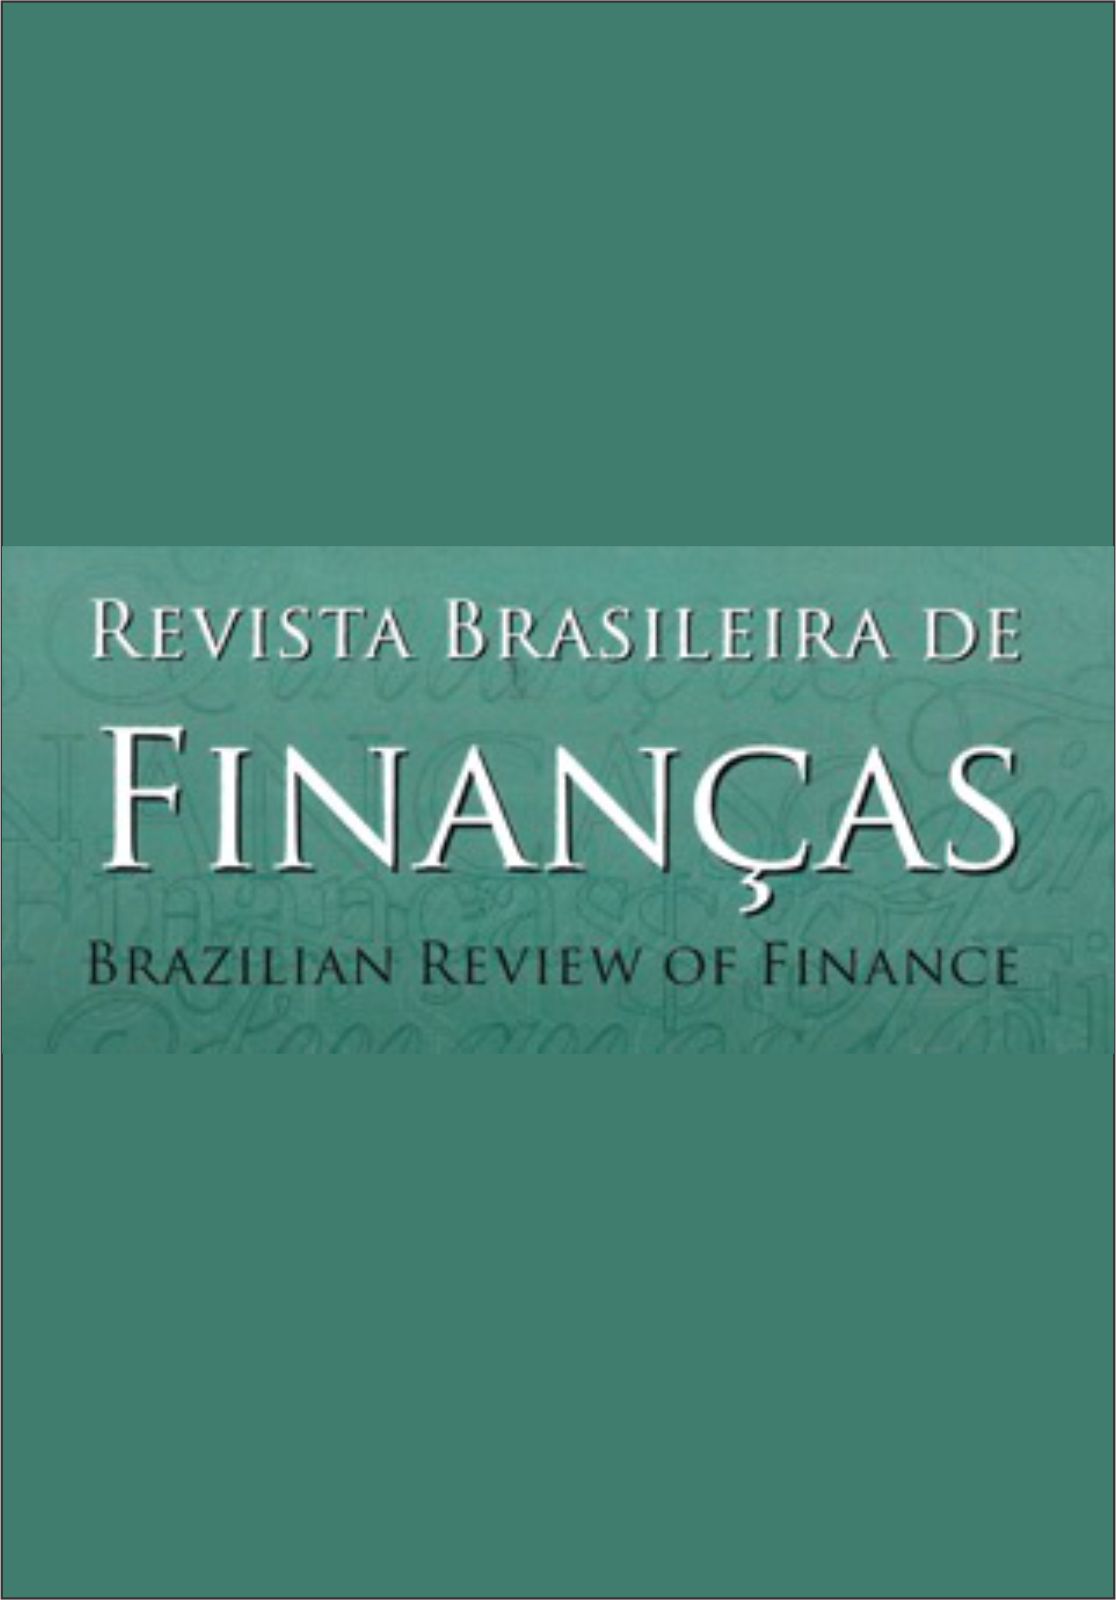 Capa: Revista Brasileira de Finanças